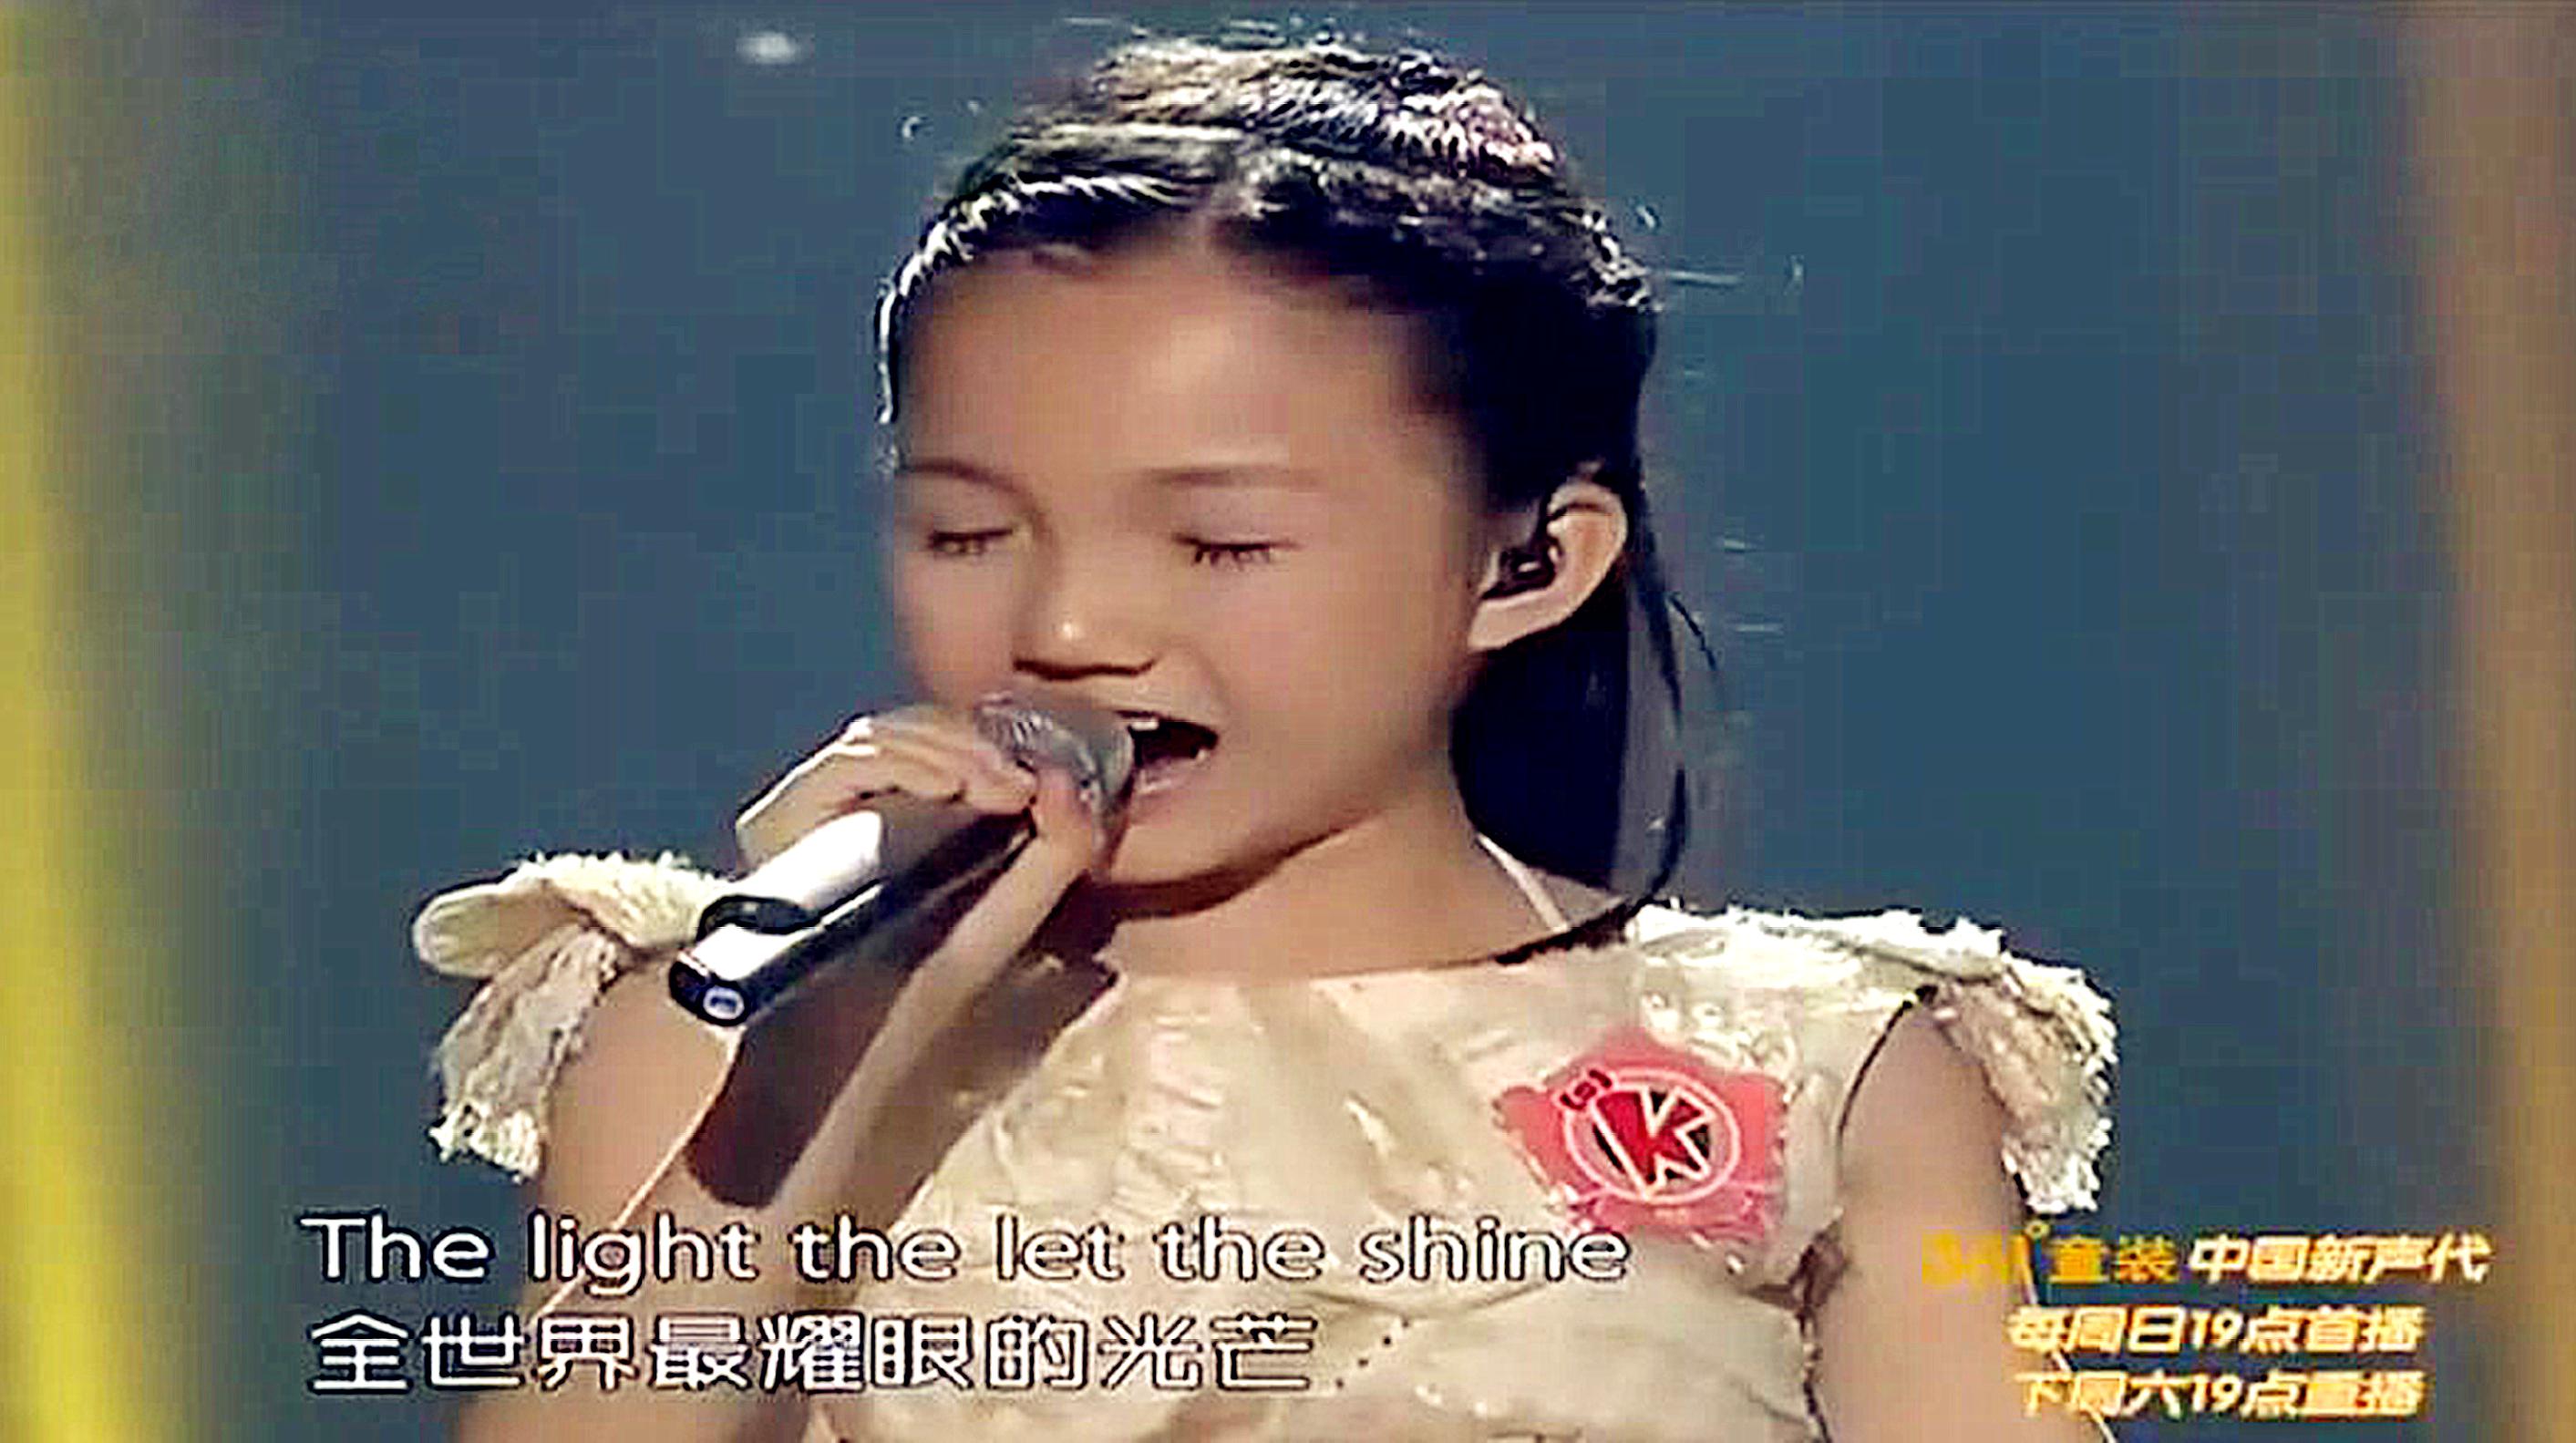 中国新声代:小女孩一首《firework》,律动非常欢快,歌词很励志